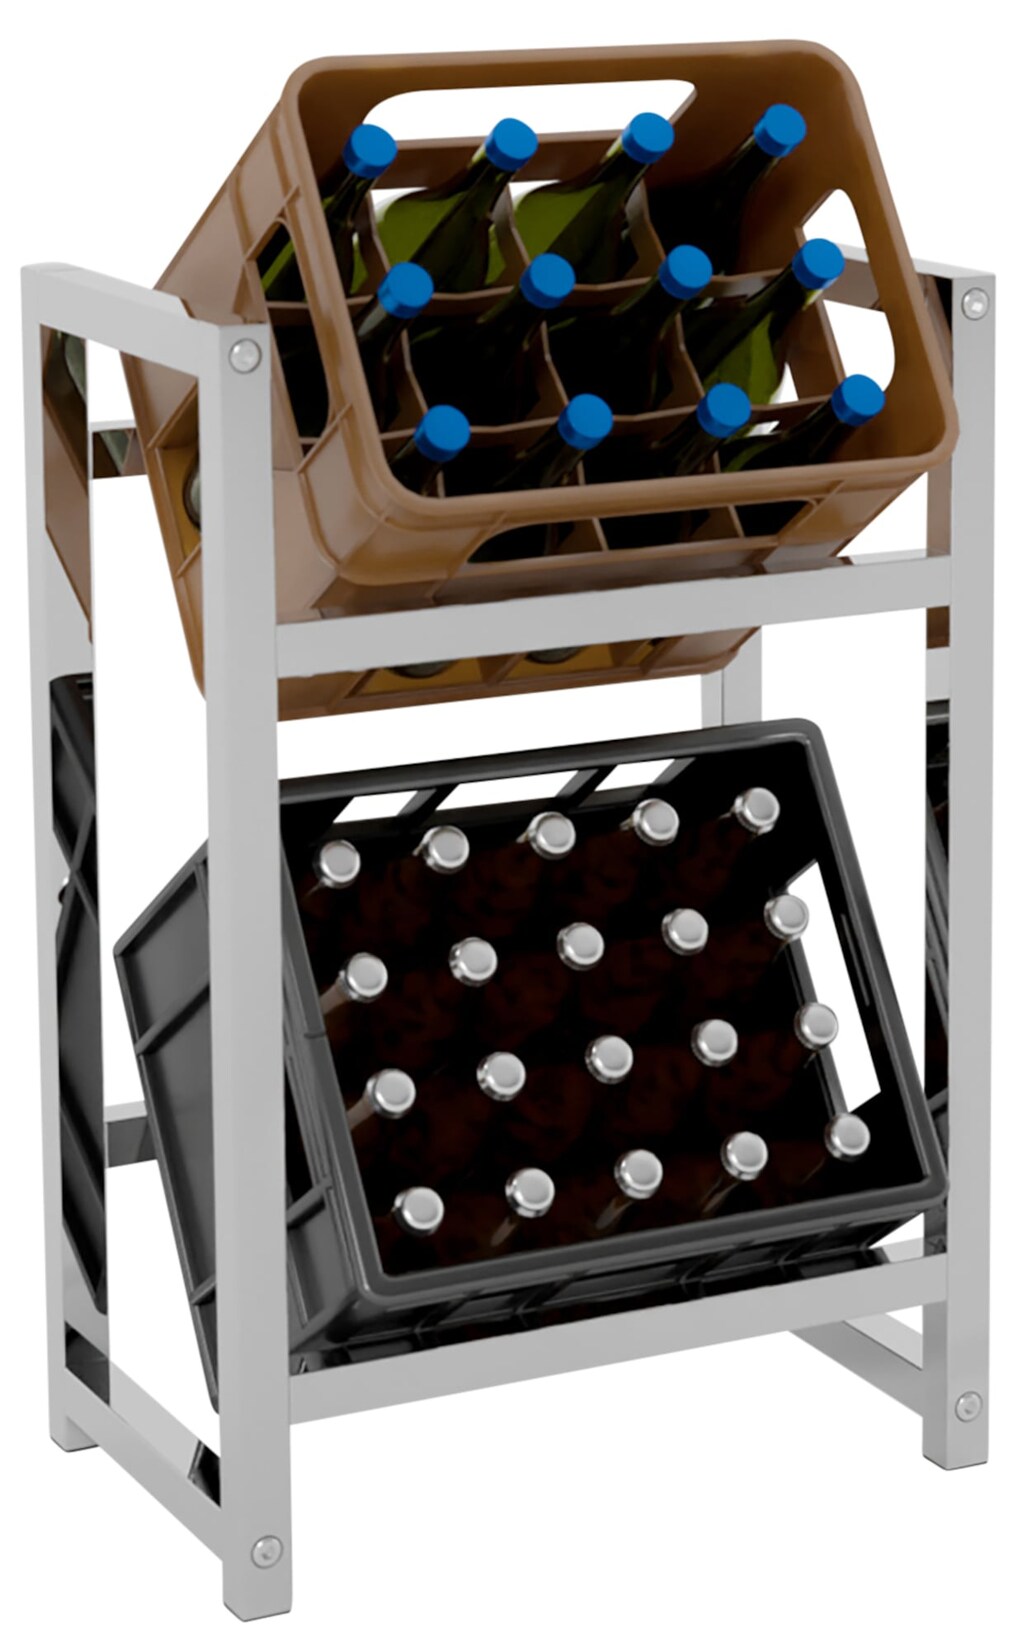 CLP Getränkekistenständer Stack I Platzsparendes robustes Kistenregal für Getränkekisten I In verschiedenen Größen und Farben erhältlich